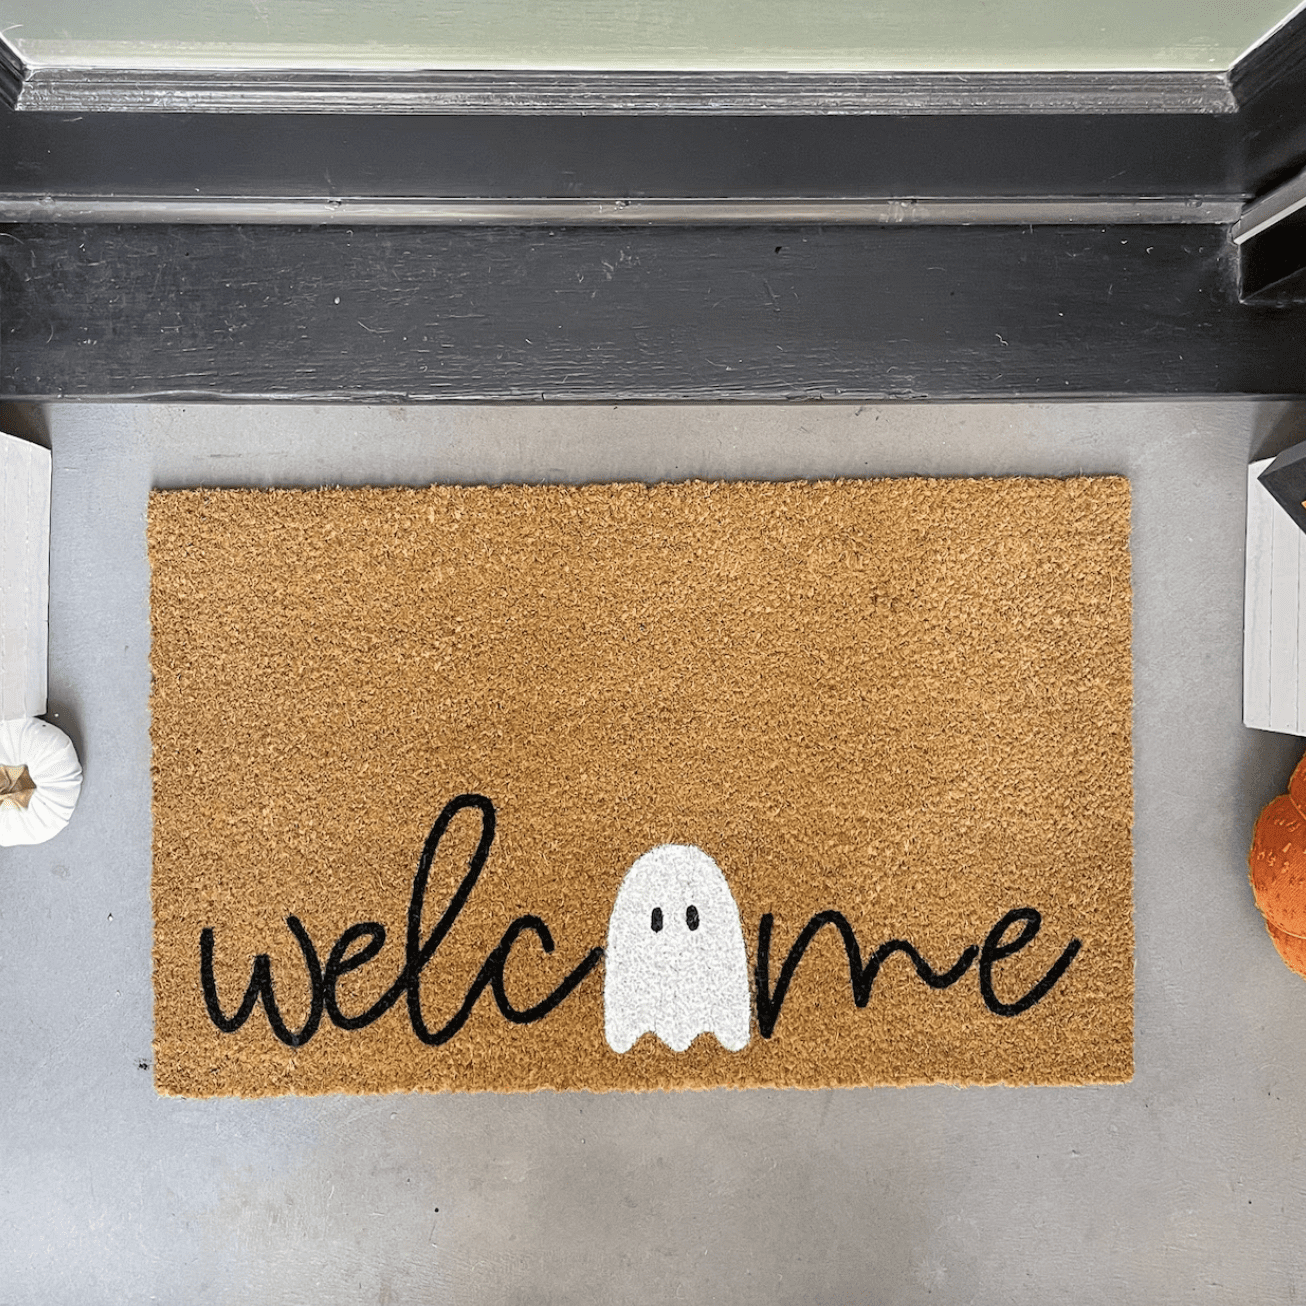 Ghost Door Mat for Halloween, Halloween Door Decor